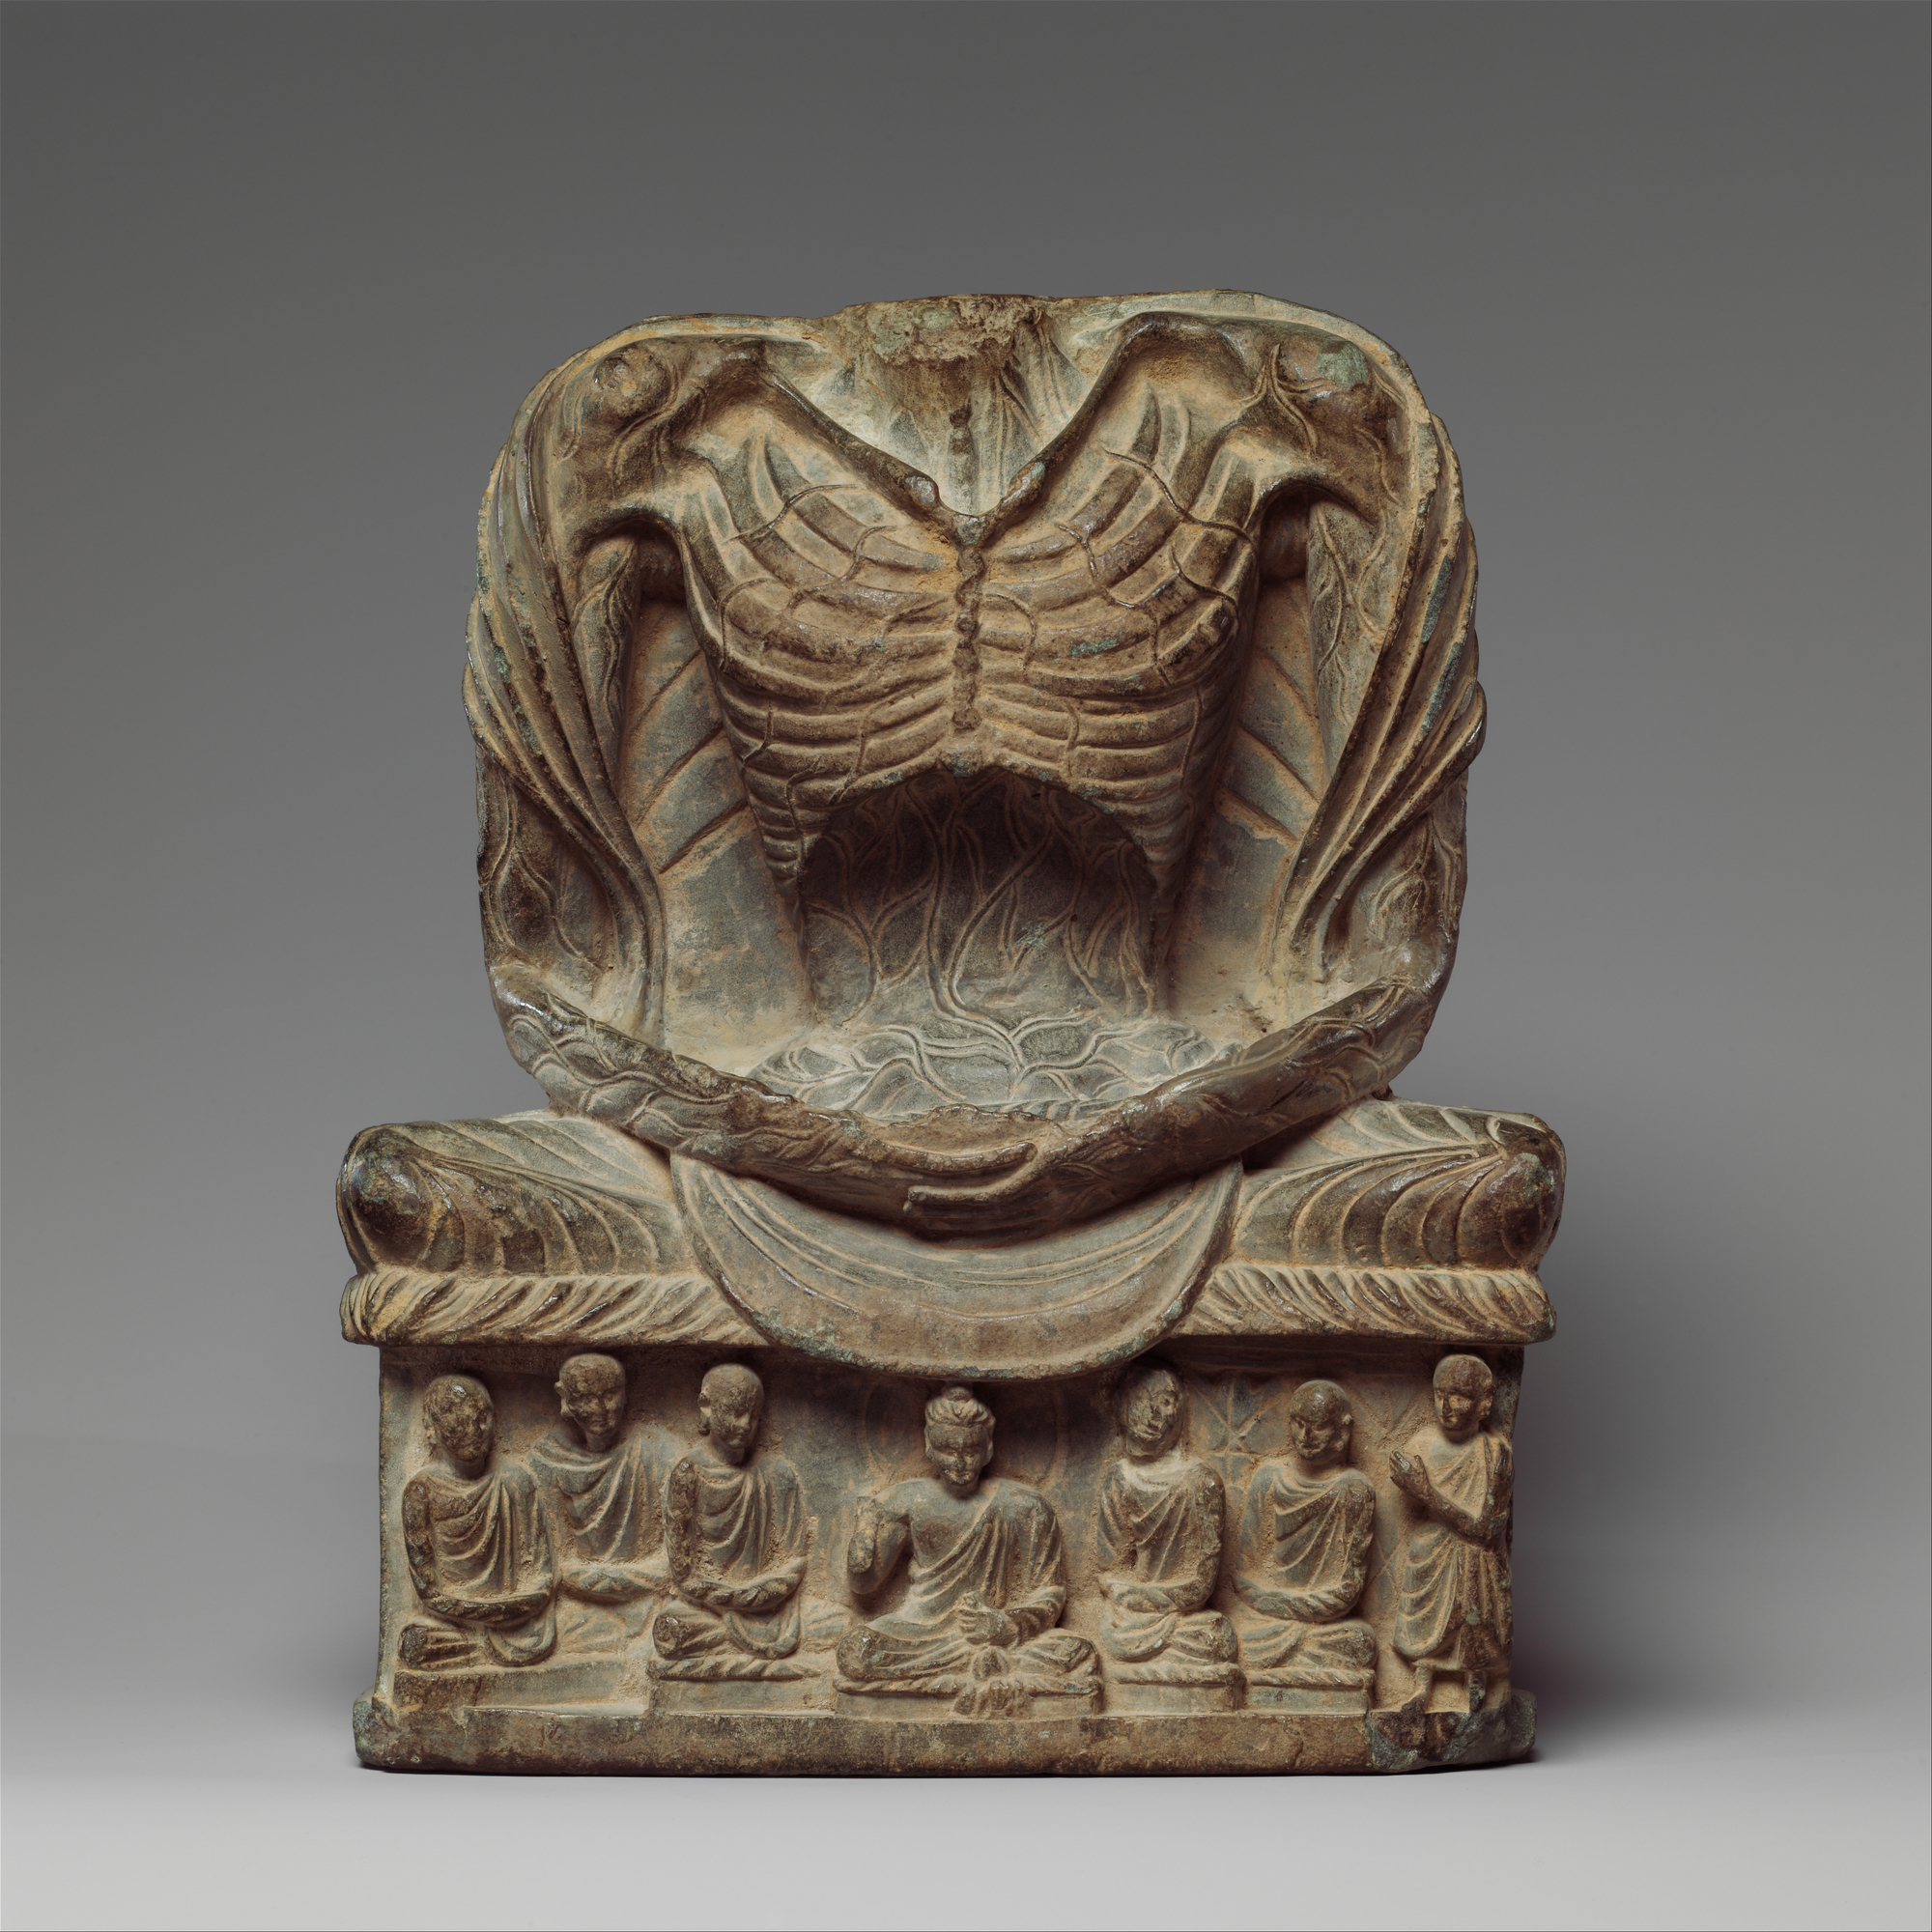 Fasting Buddha Shakyamuni, 3rd–5th century Kushan period, Pakistan/ancient Gandhara (Metropolitan Museum of Art)